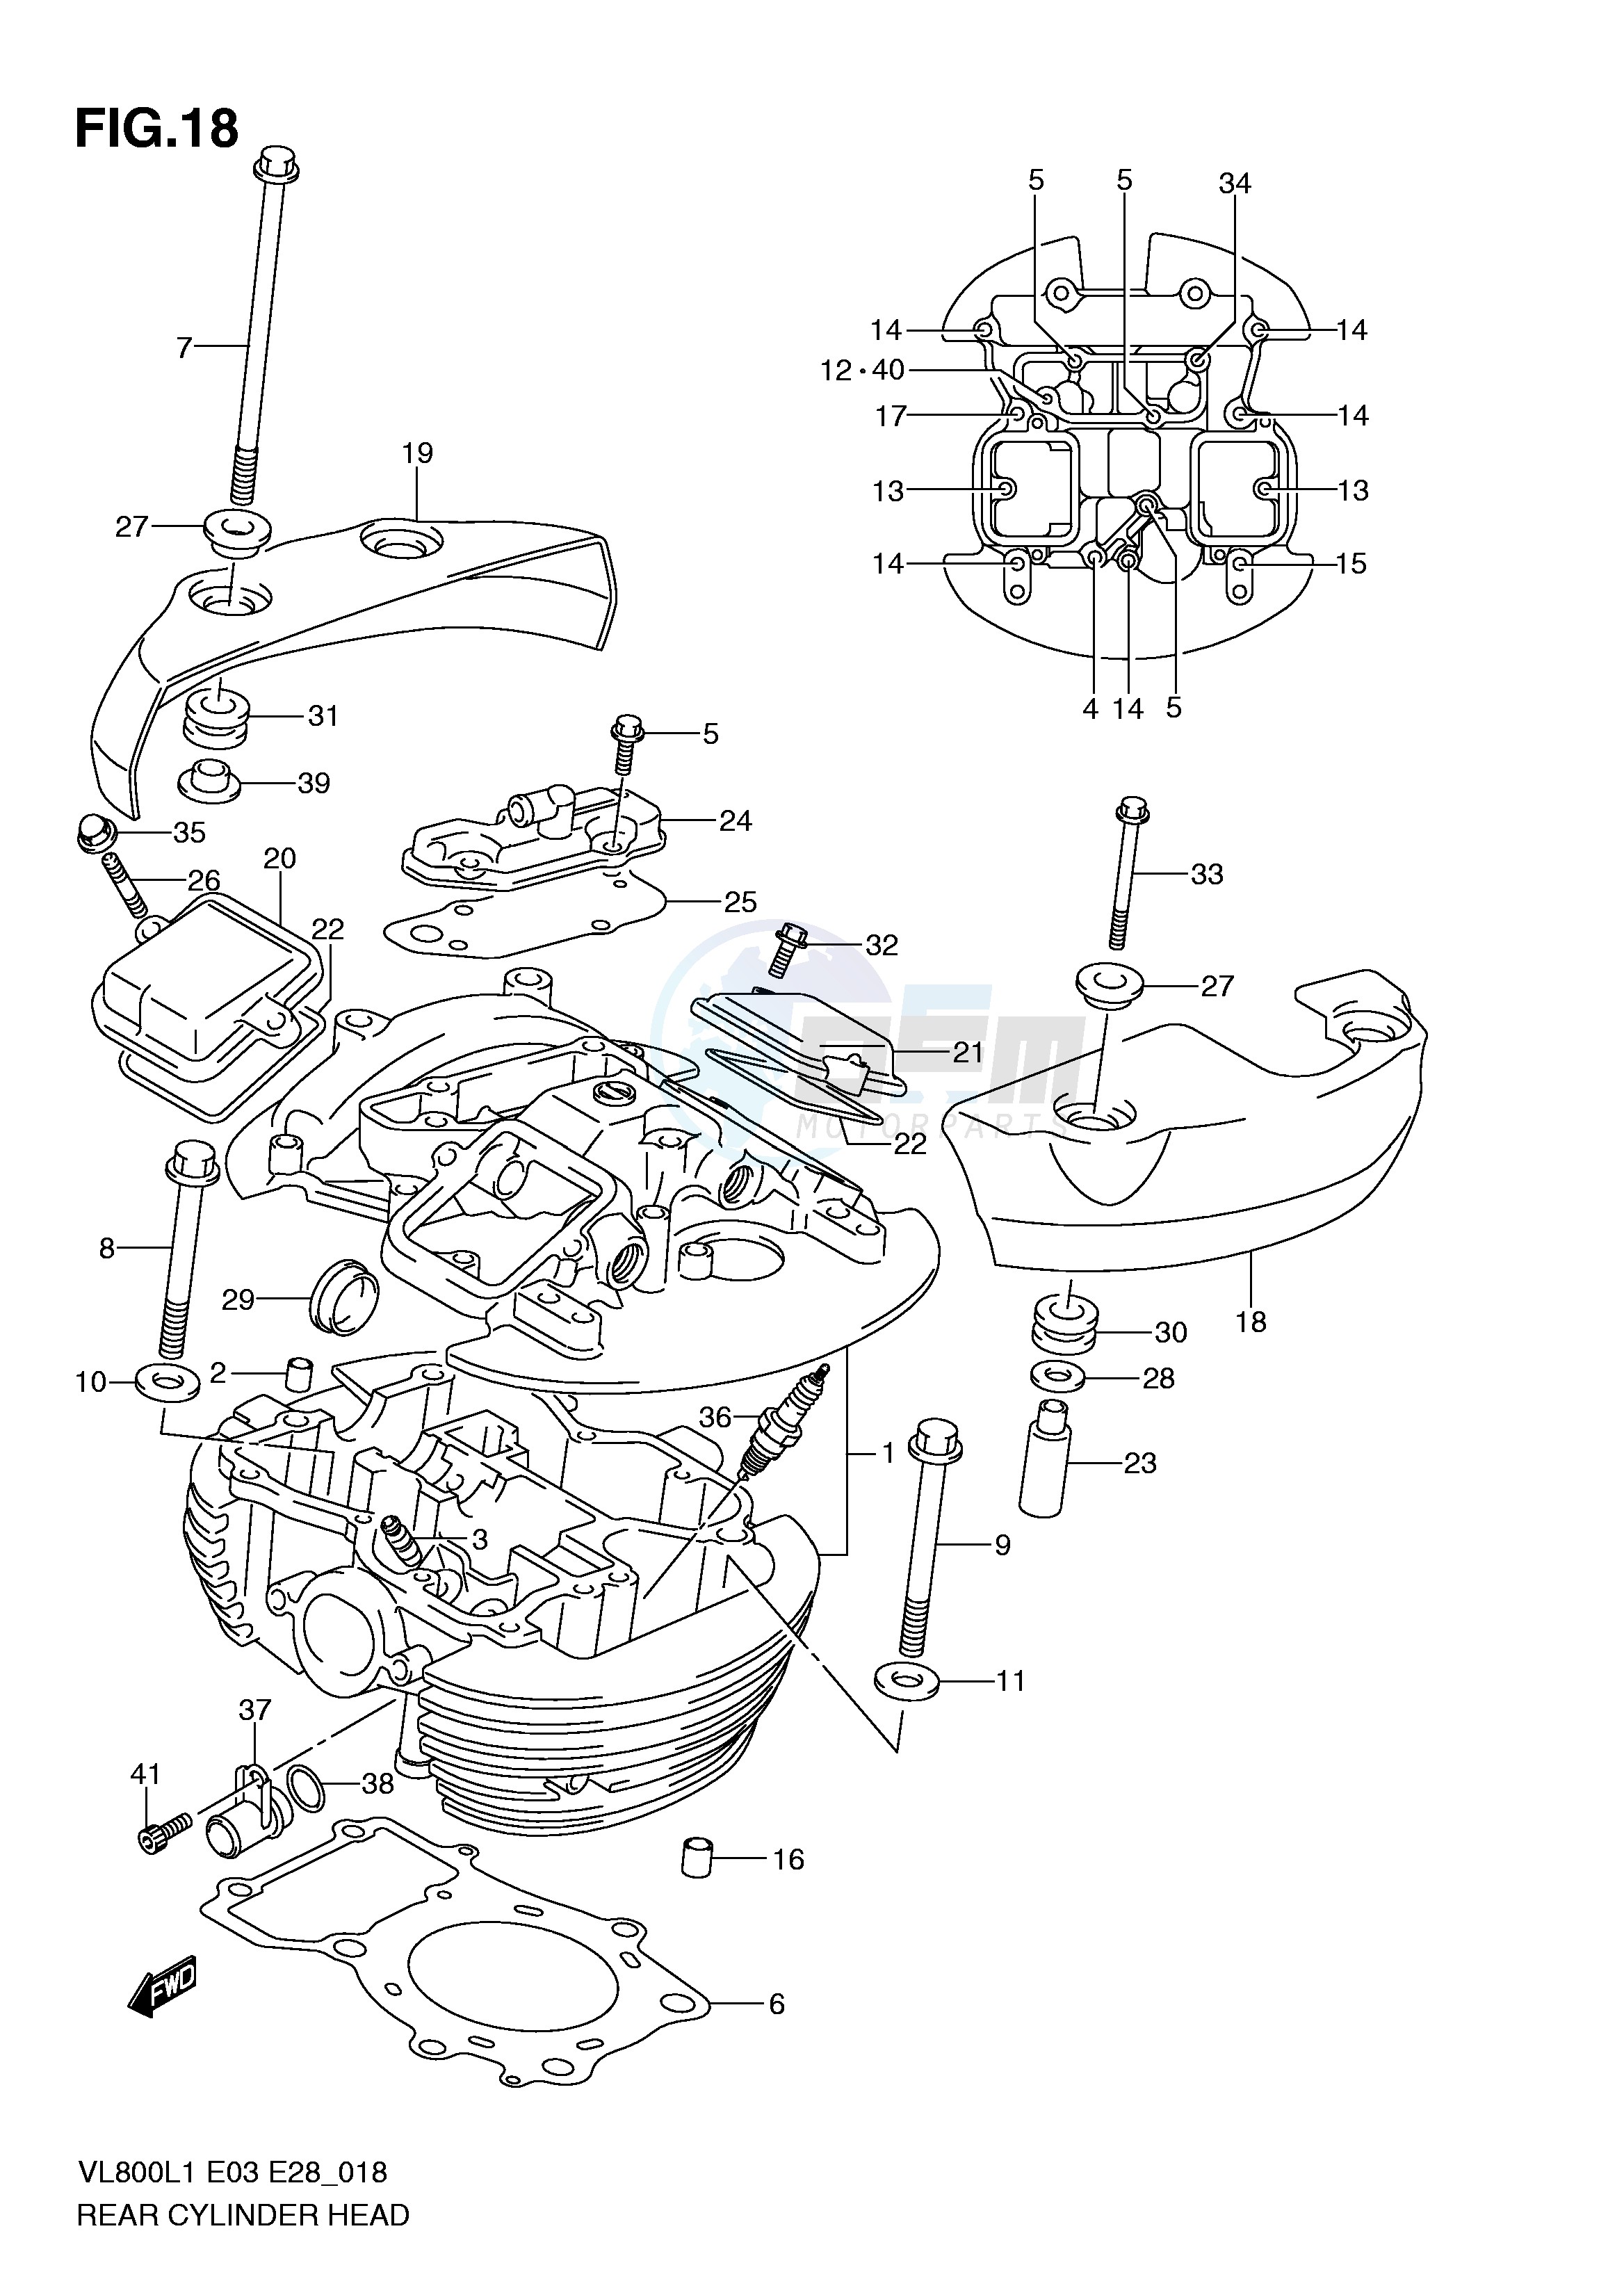 REAR CYLINDER HEAD (VL800TL1 E28) blueprint